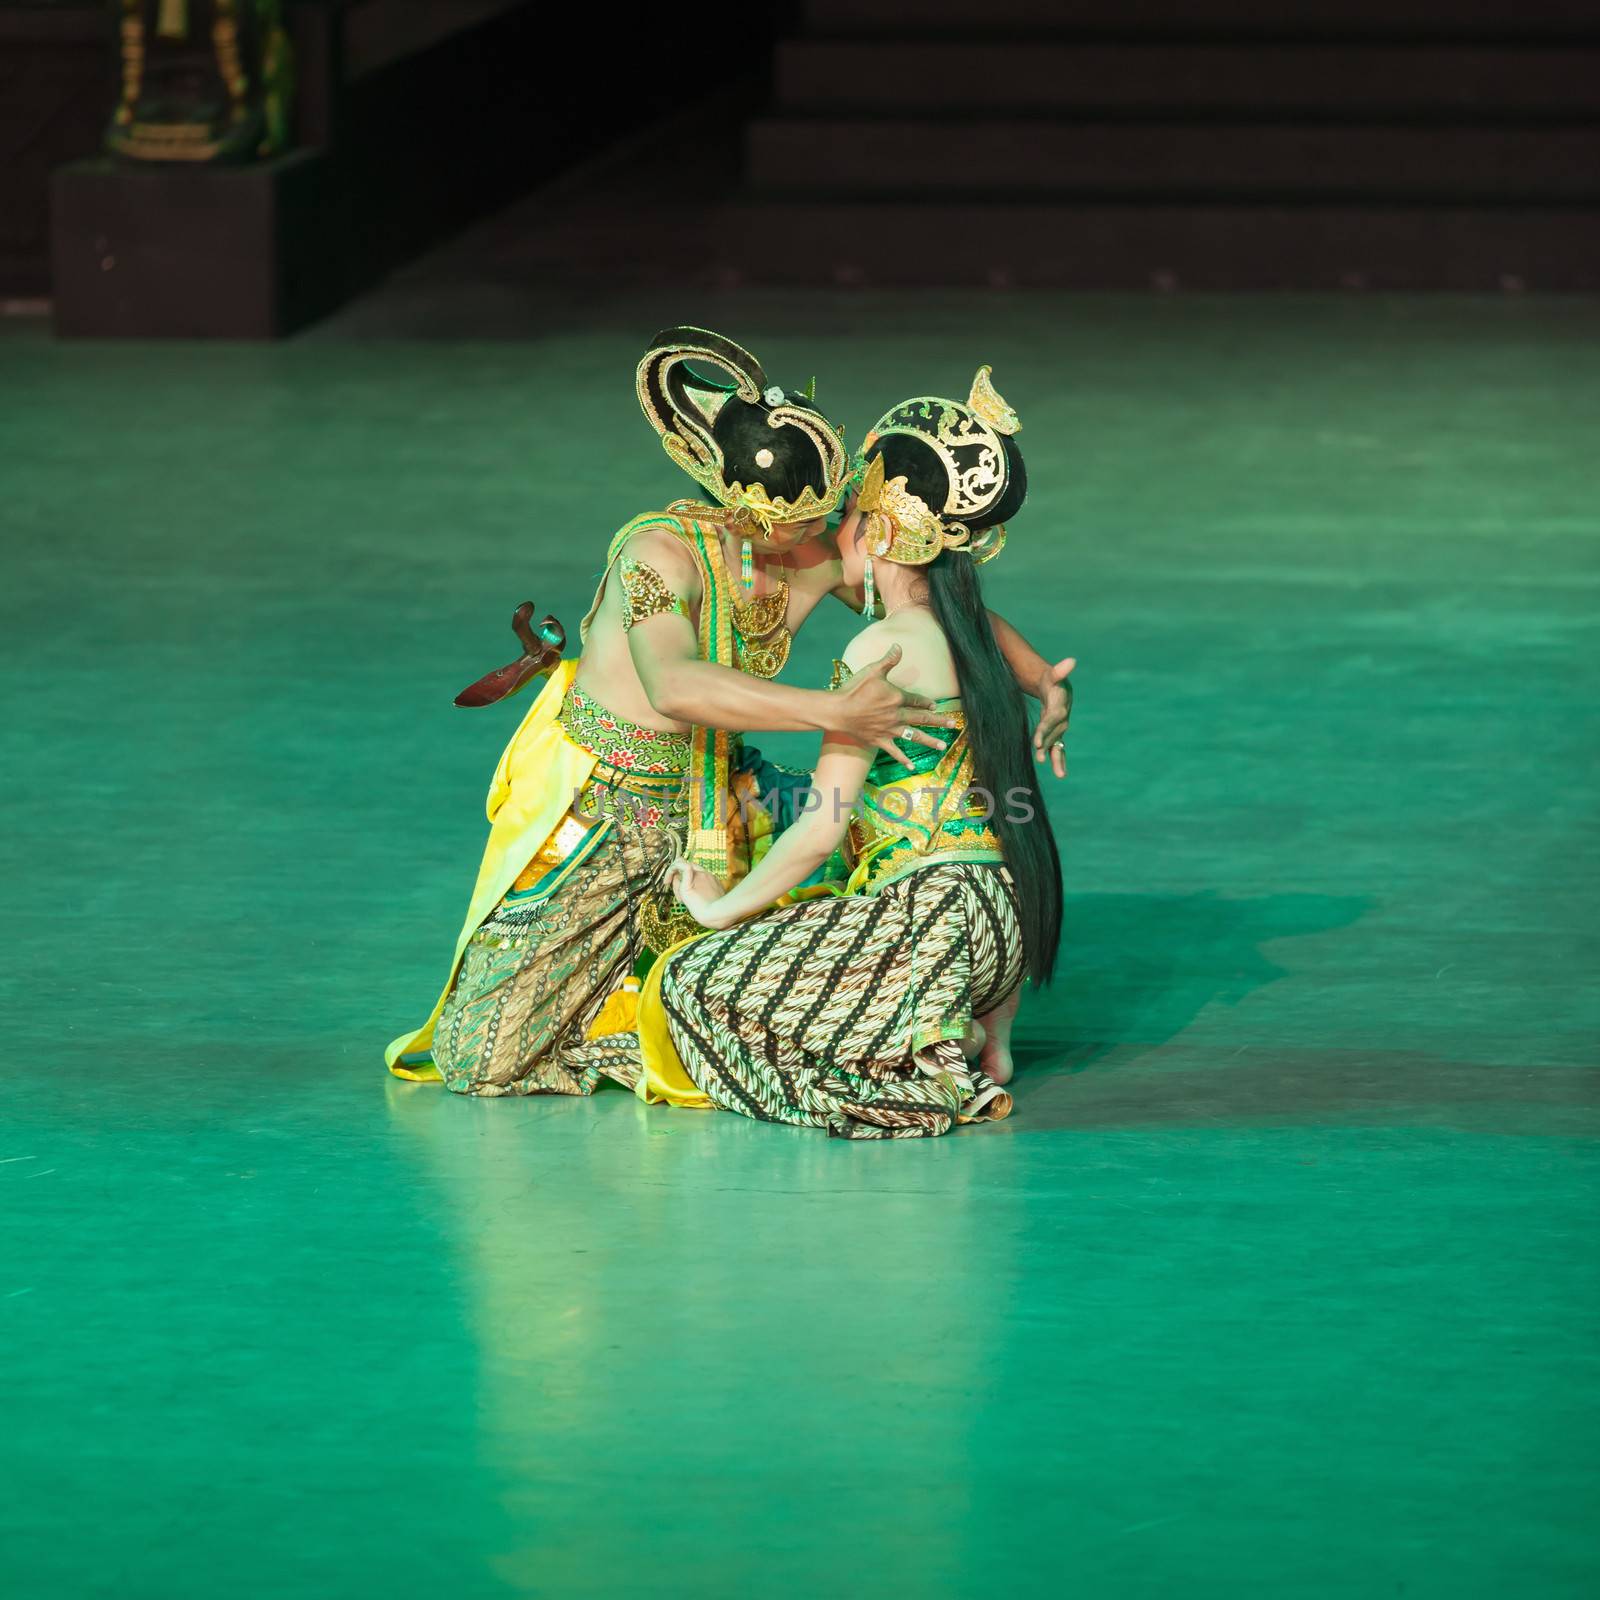 Ramayana Ballet at at Prambanan, Indonesia by iryna_rasko